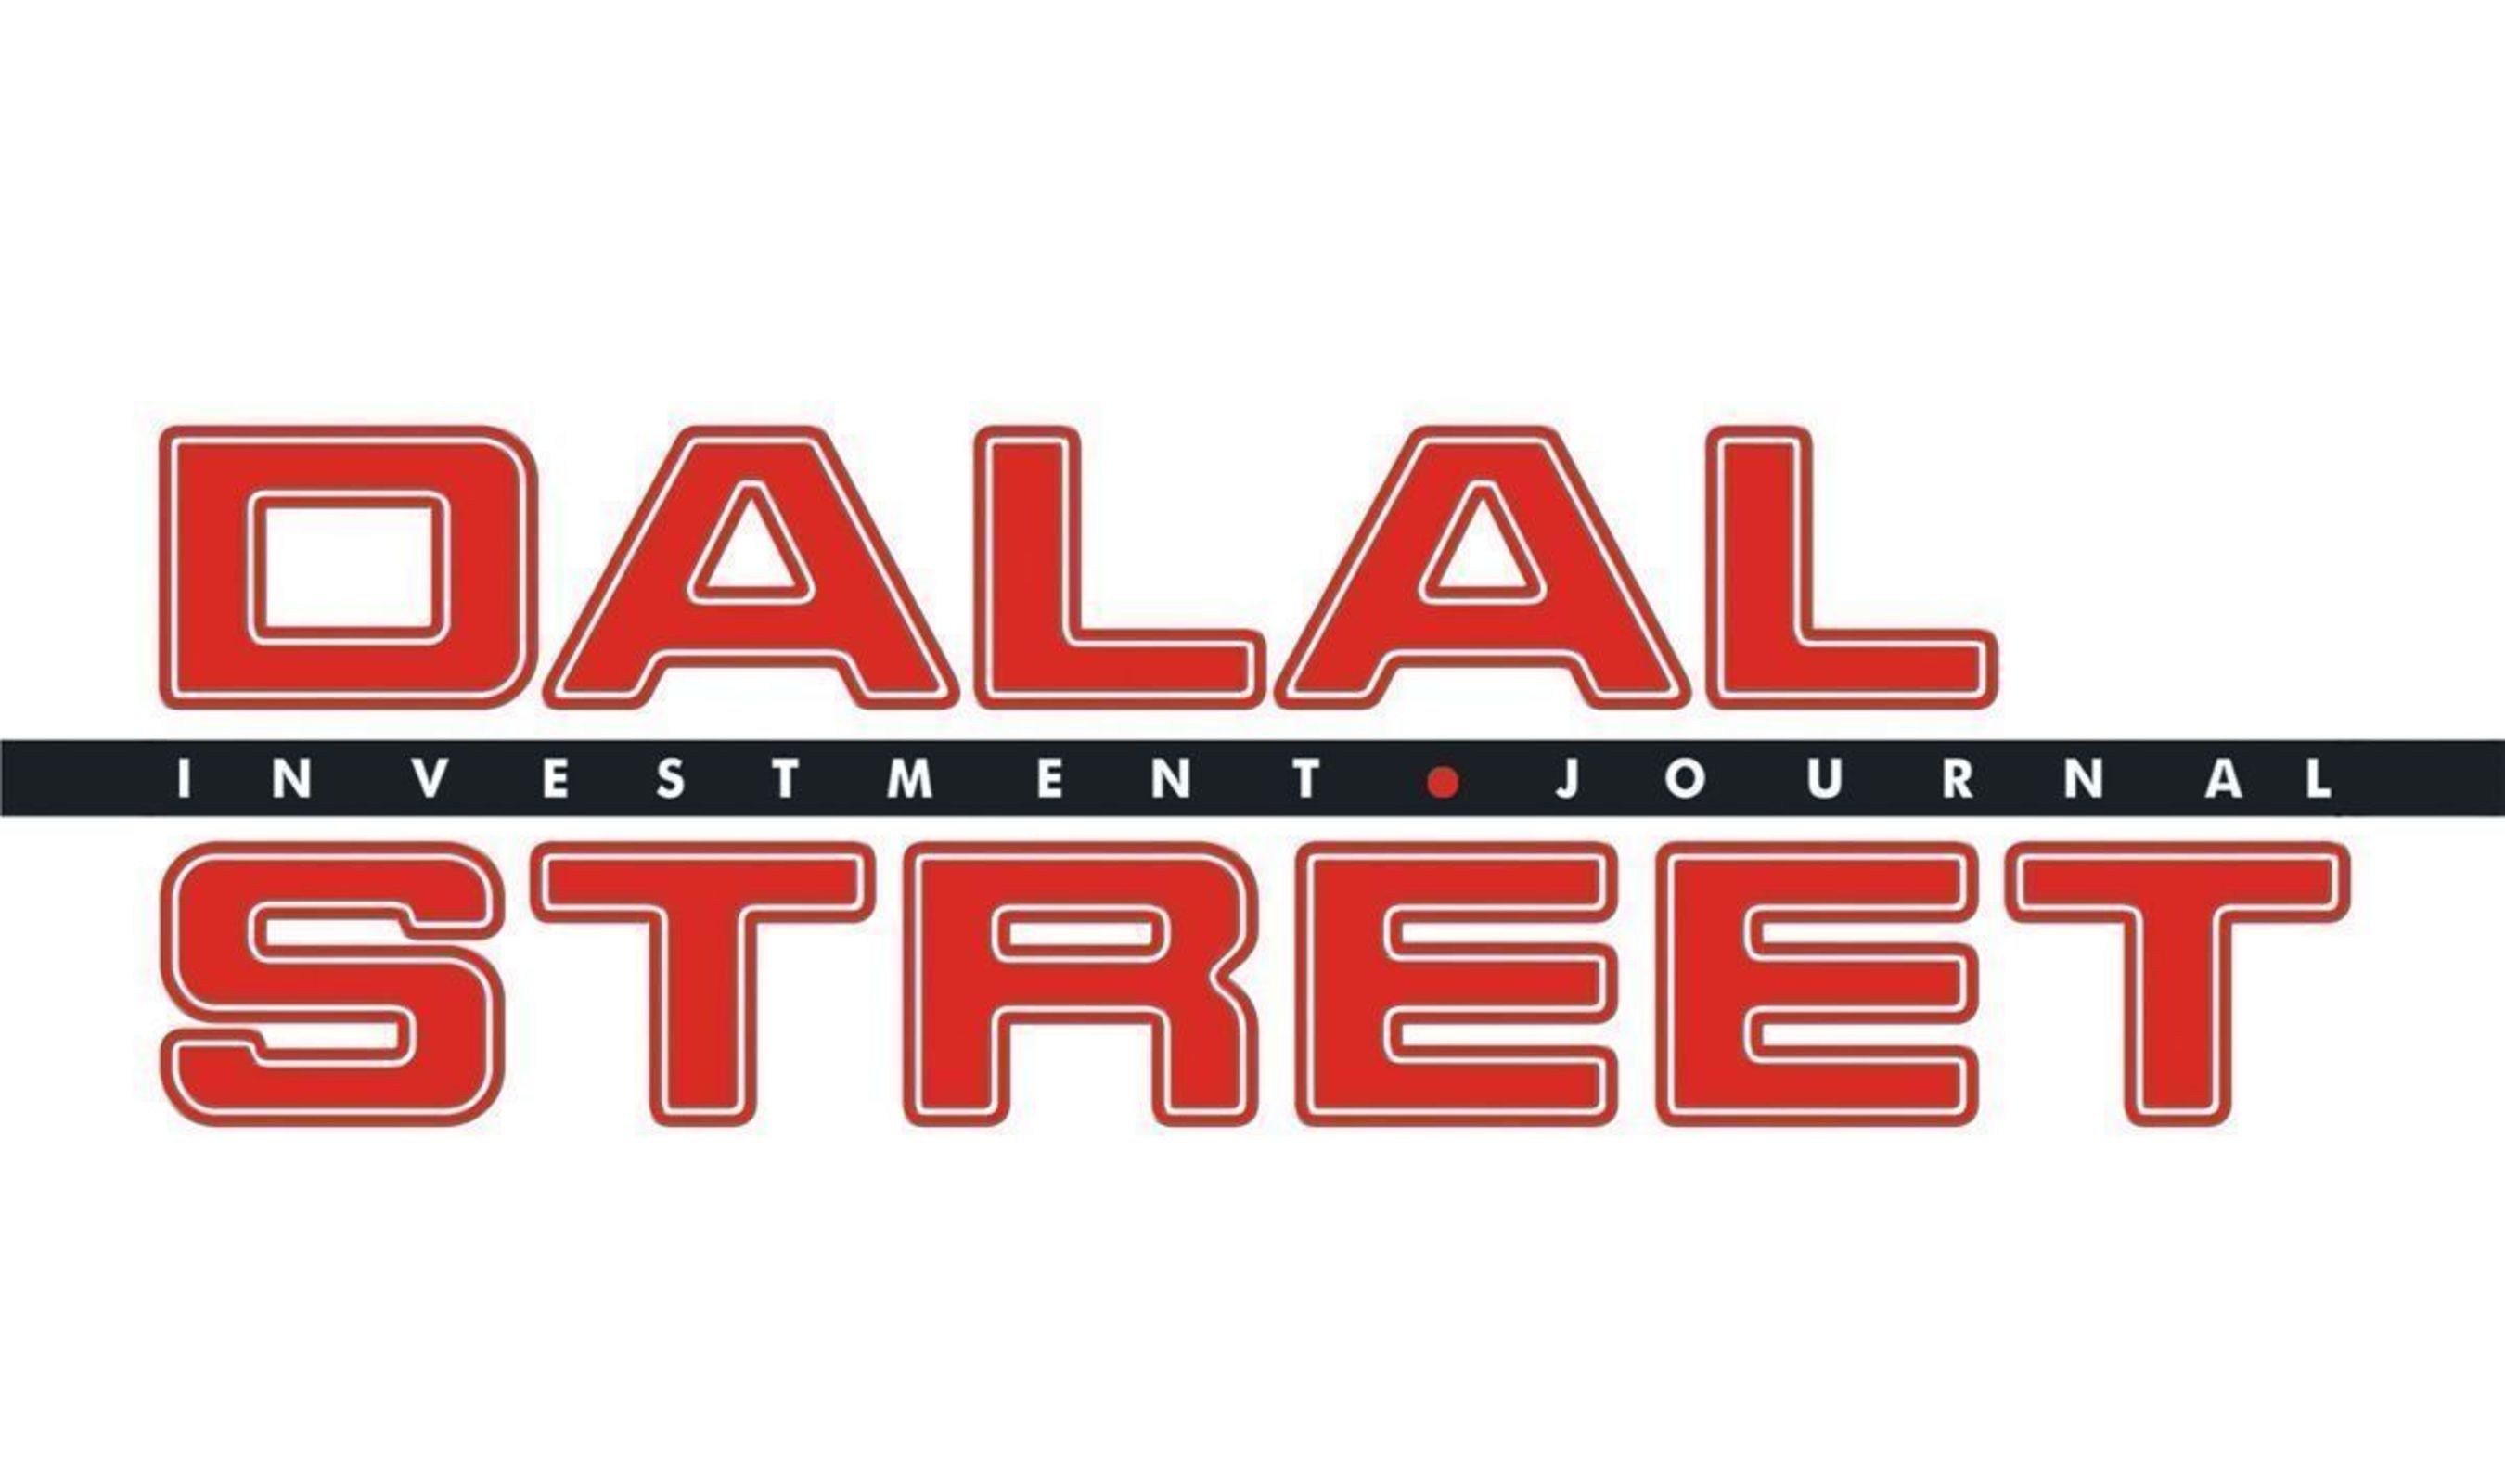 Dalal Street Investment Journal (PRNewsFoto/DSIJ Pvt. Ltd.)